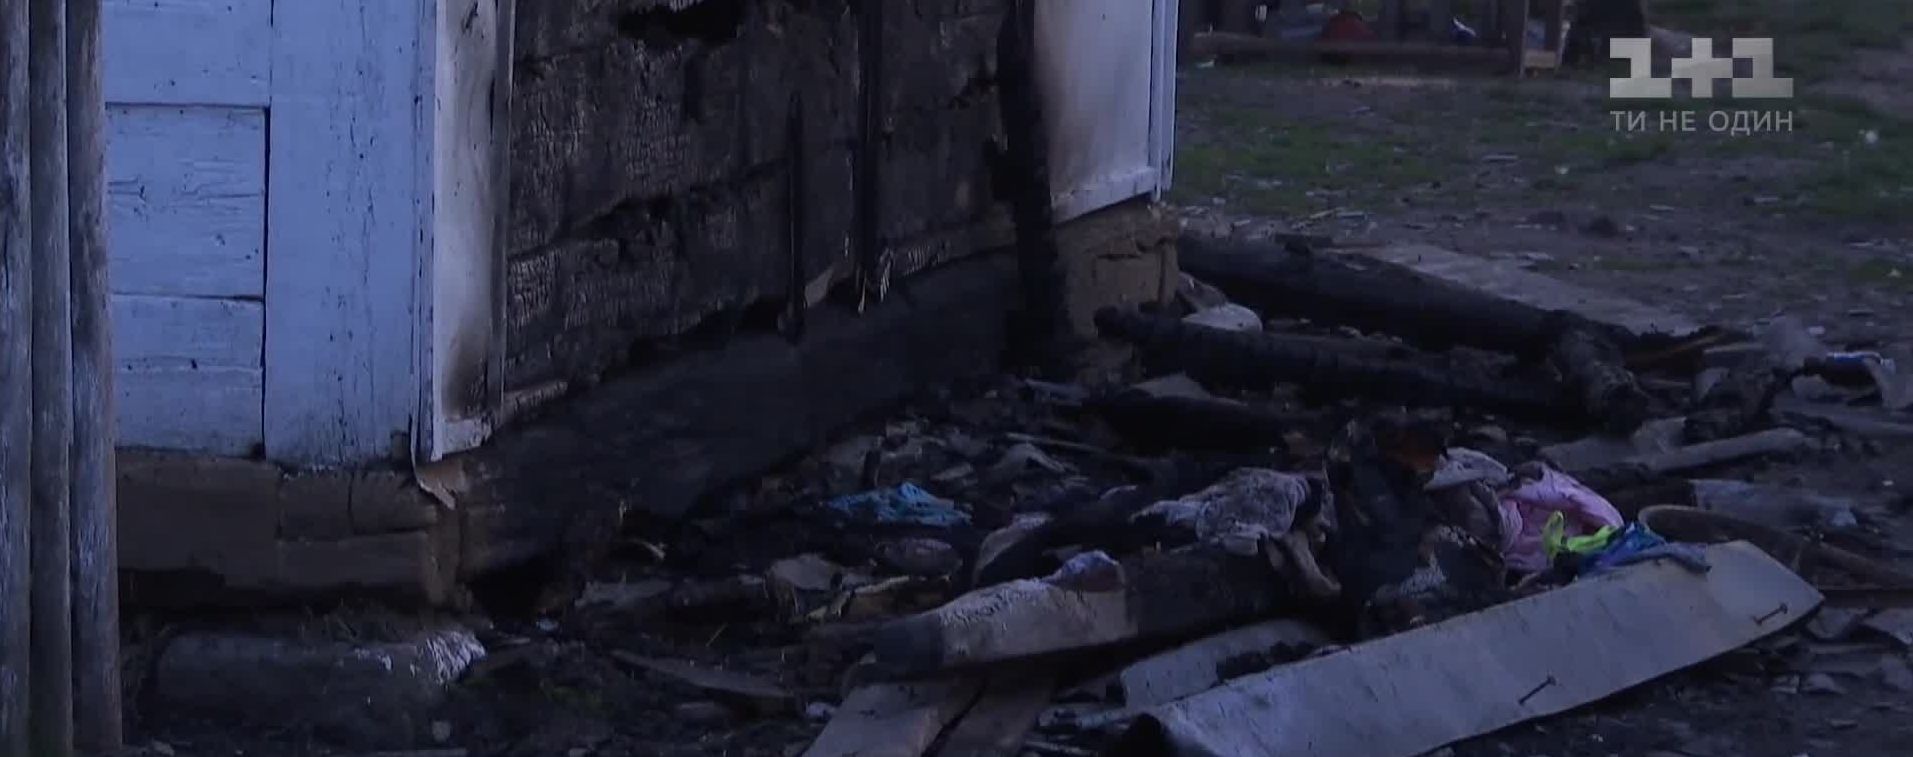 На Житомирщині через підпал матір та шестеро дітей ледь не загинули у пожежі